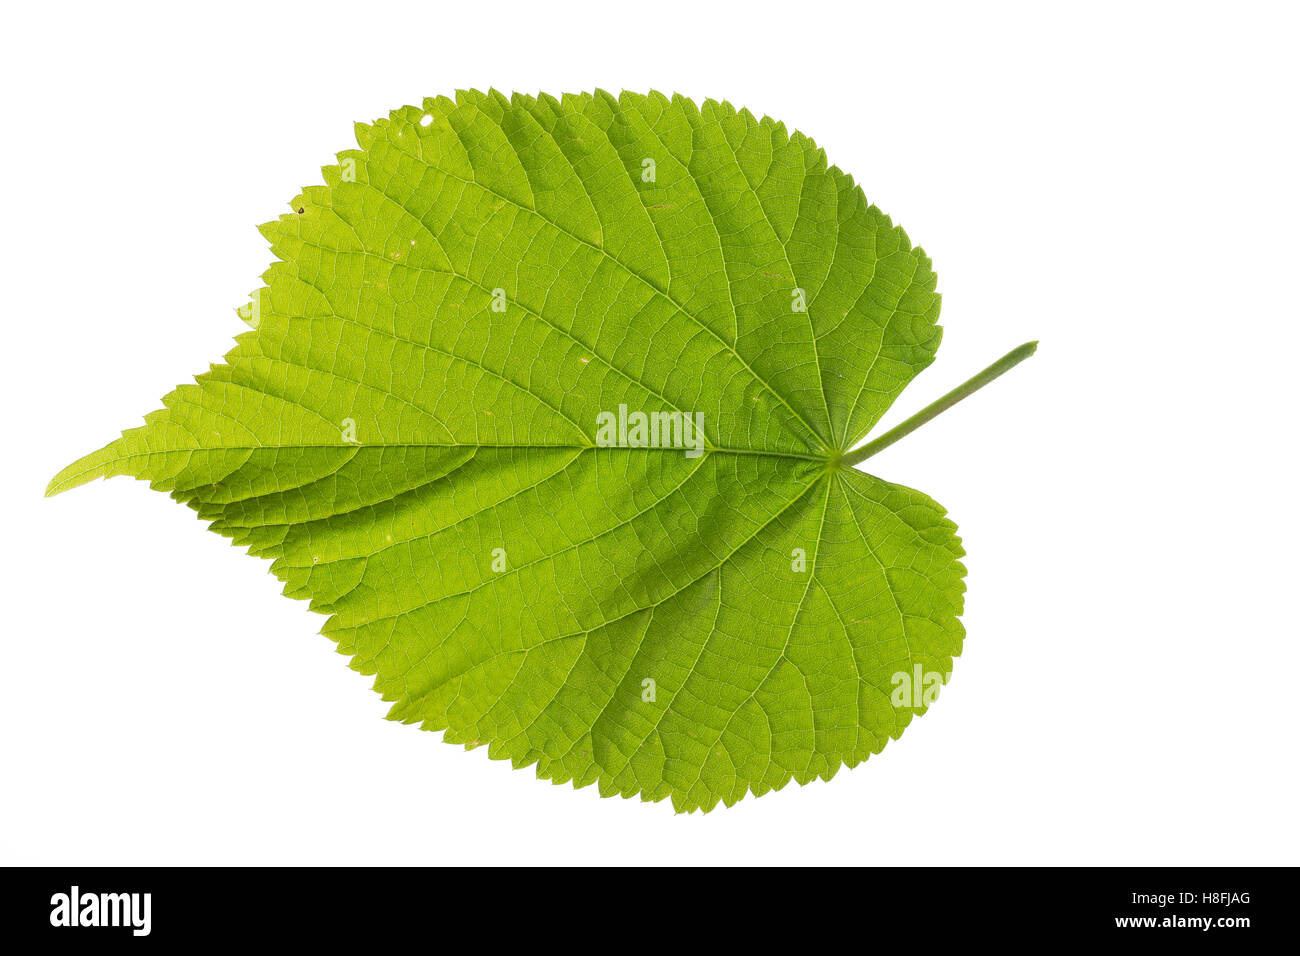 Sommer-Linde, Sommerlinde, Linde, Tilia platyphyllos, Tilia grandifolia, large-leaved lime, Large Leaved Lime, largeleaf linden, Stock Photo